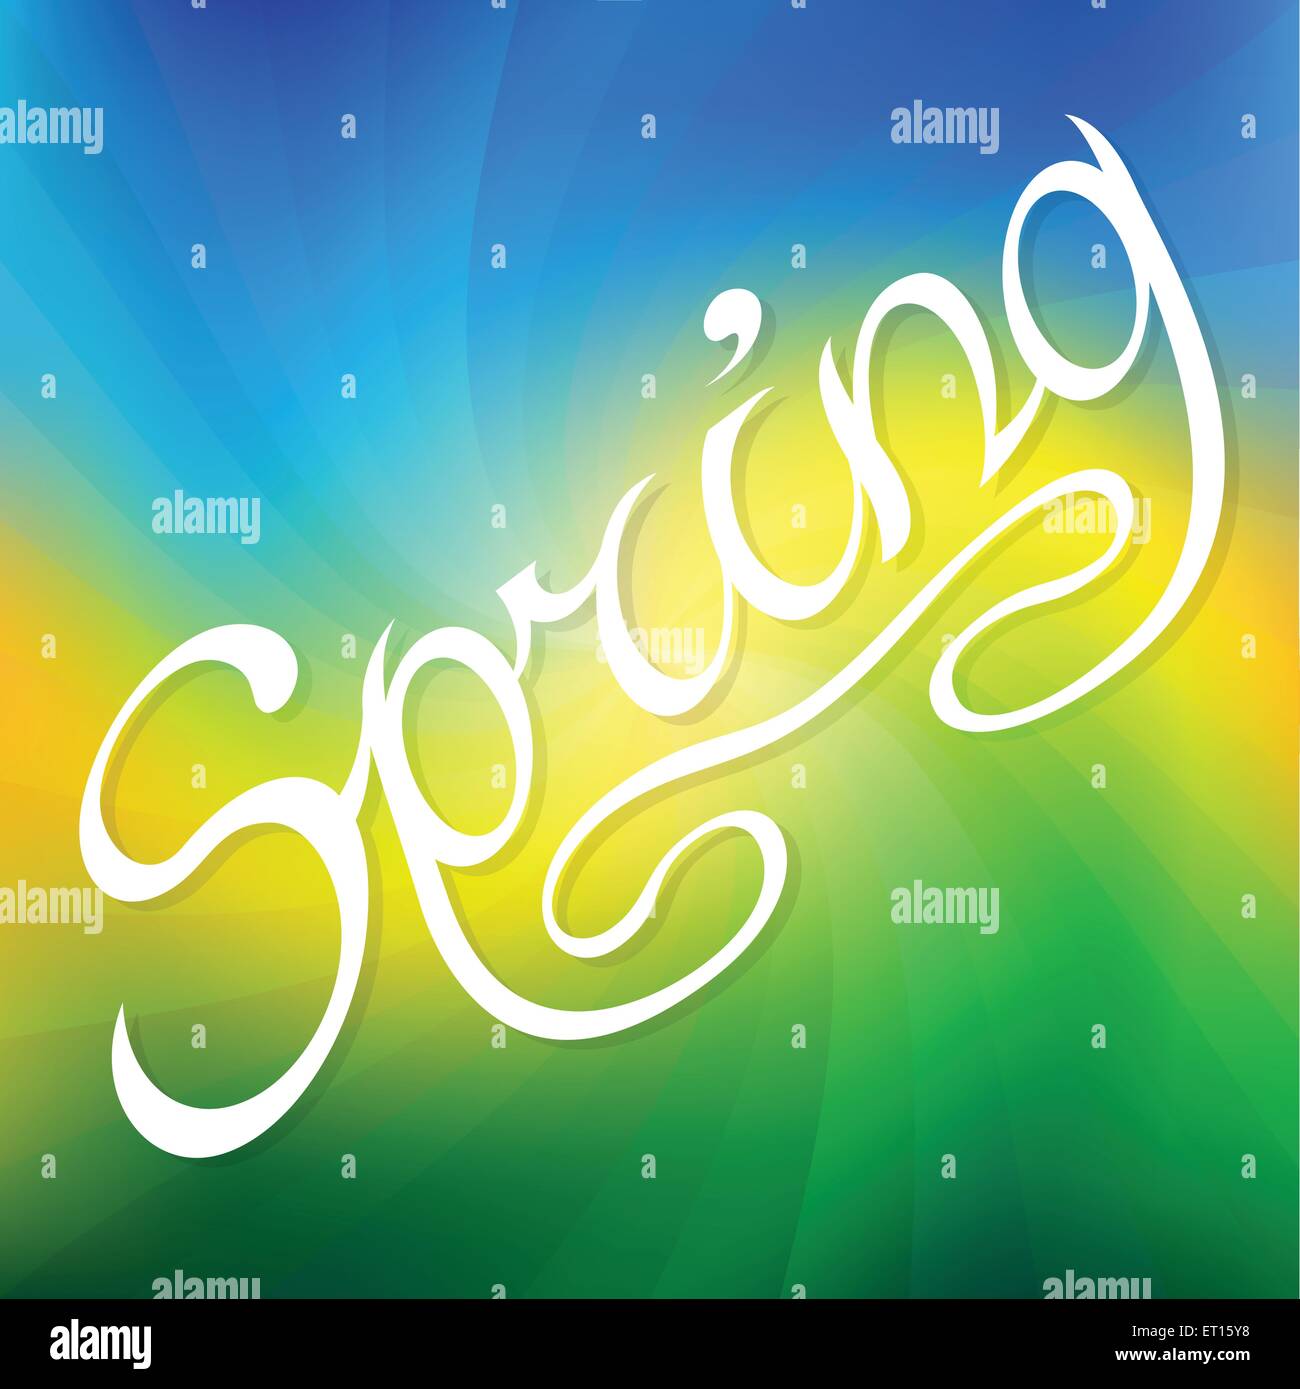 Handgezeichnete Wort Frühling Schriftzug auf bunten verzogene Streifen Hintergrund. 10 RGB EPS-Vektor-illustration Stock Vektor